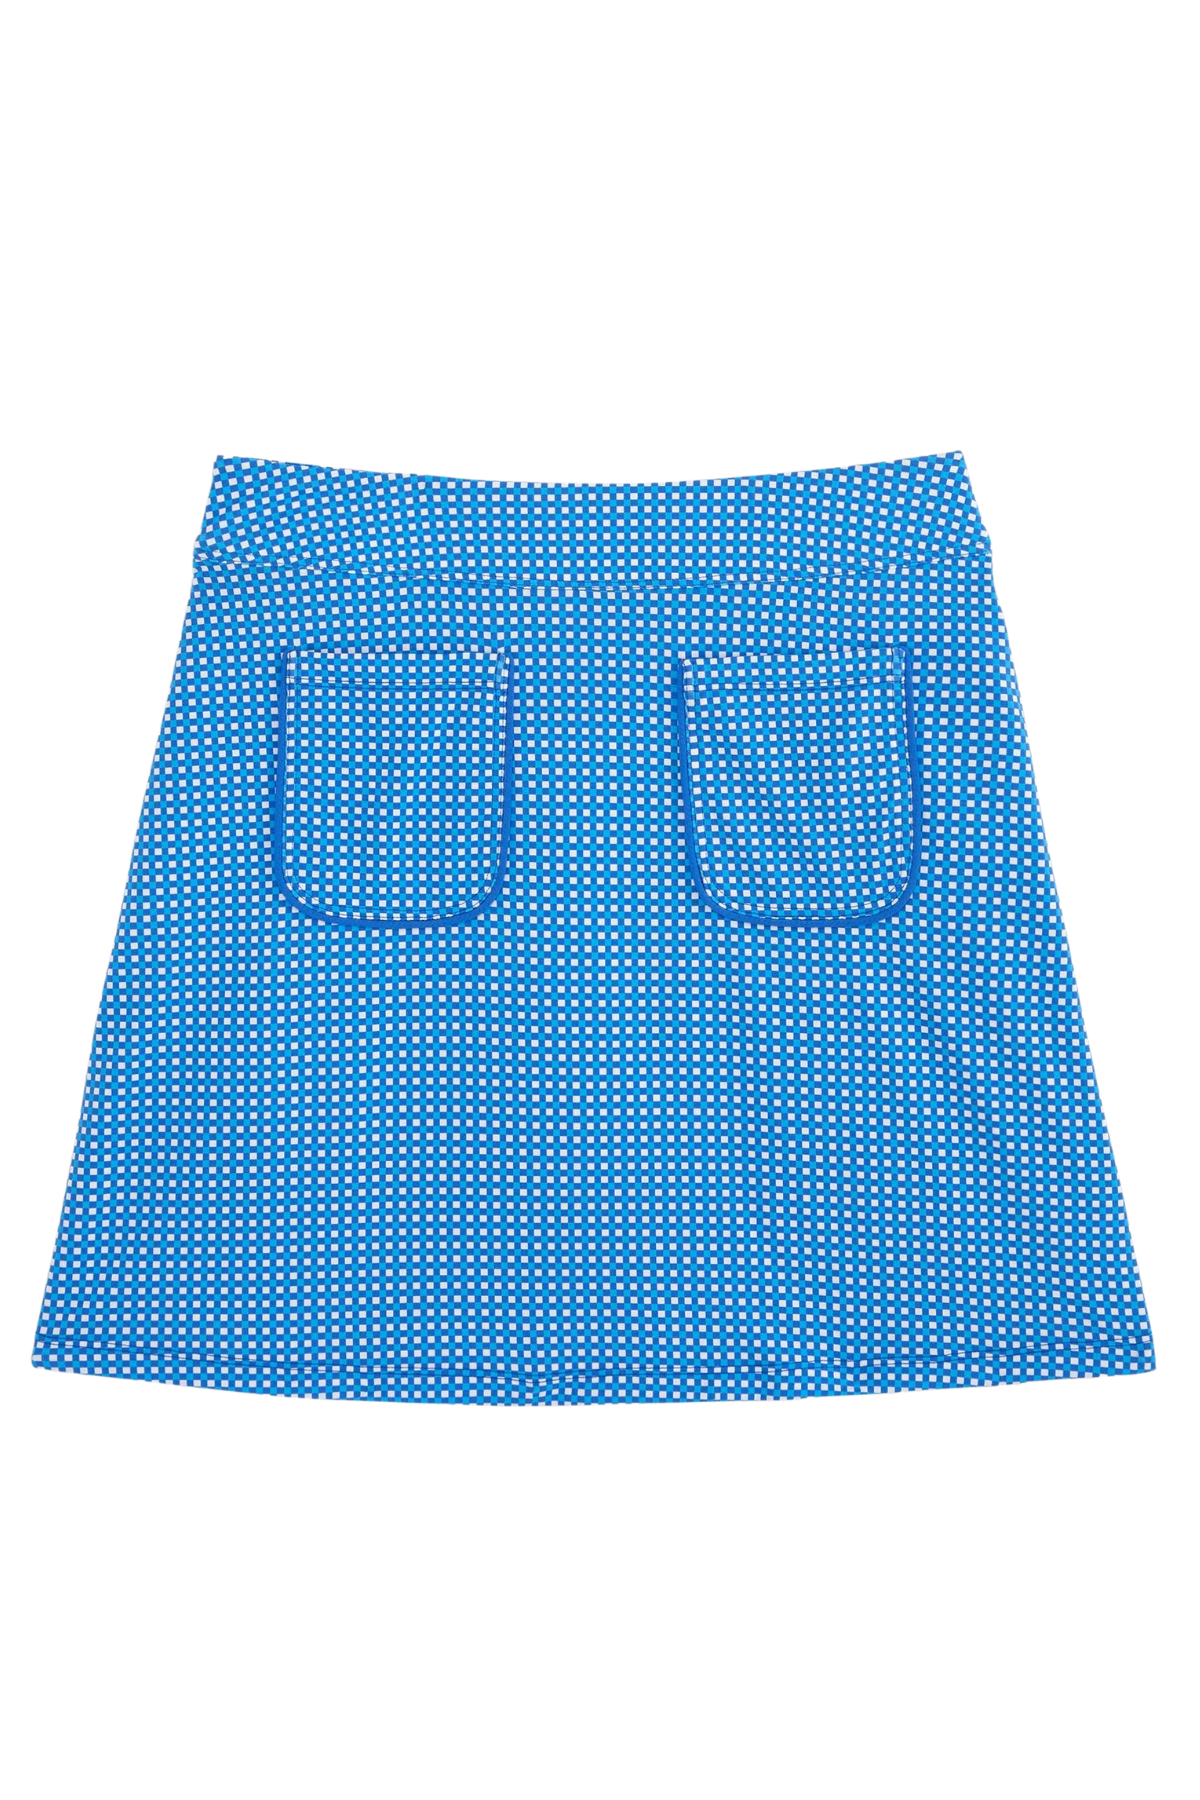 Patch Pocket 16 1/2" Skirt